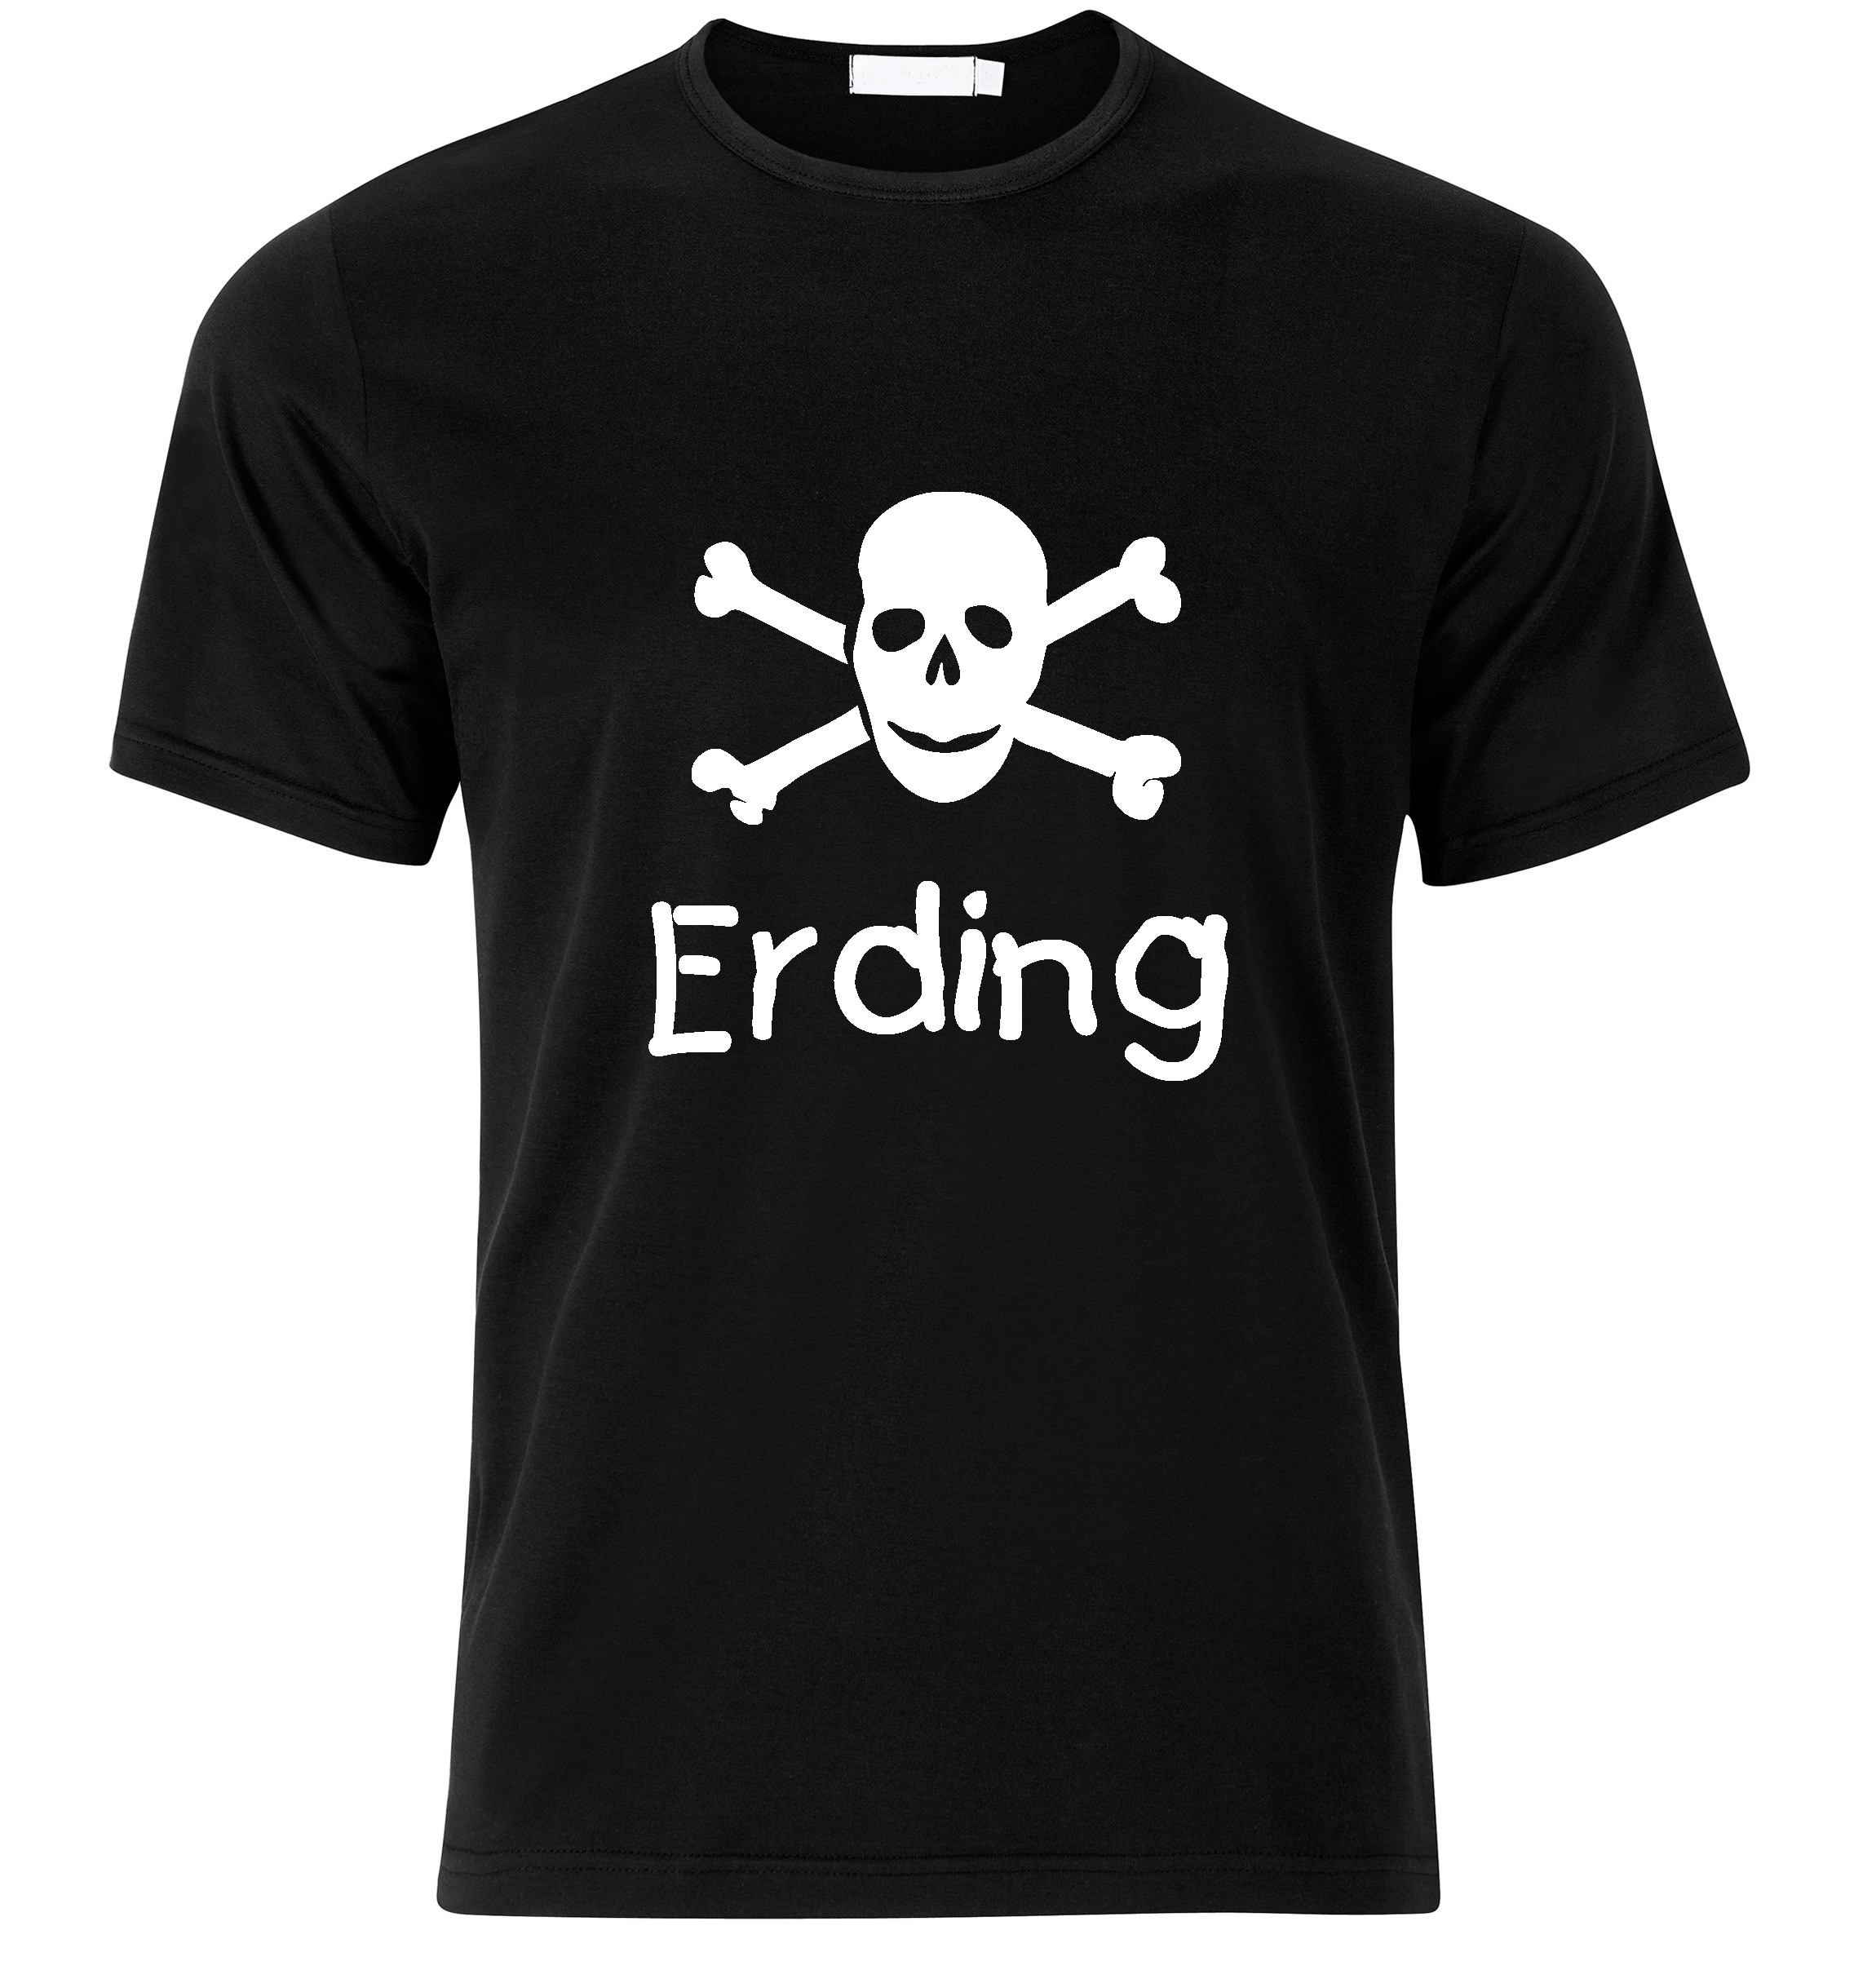 T-Shirt Erding Jolly Roger, Totenkopf